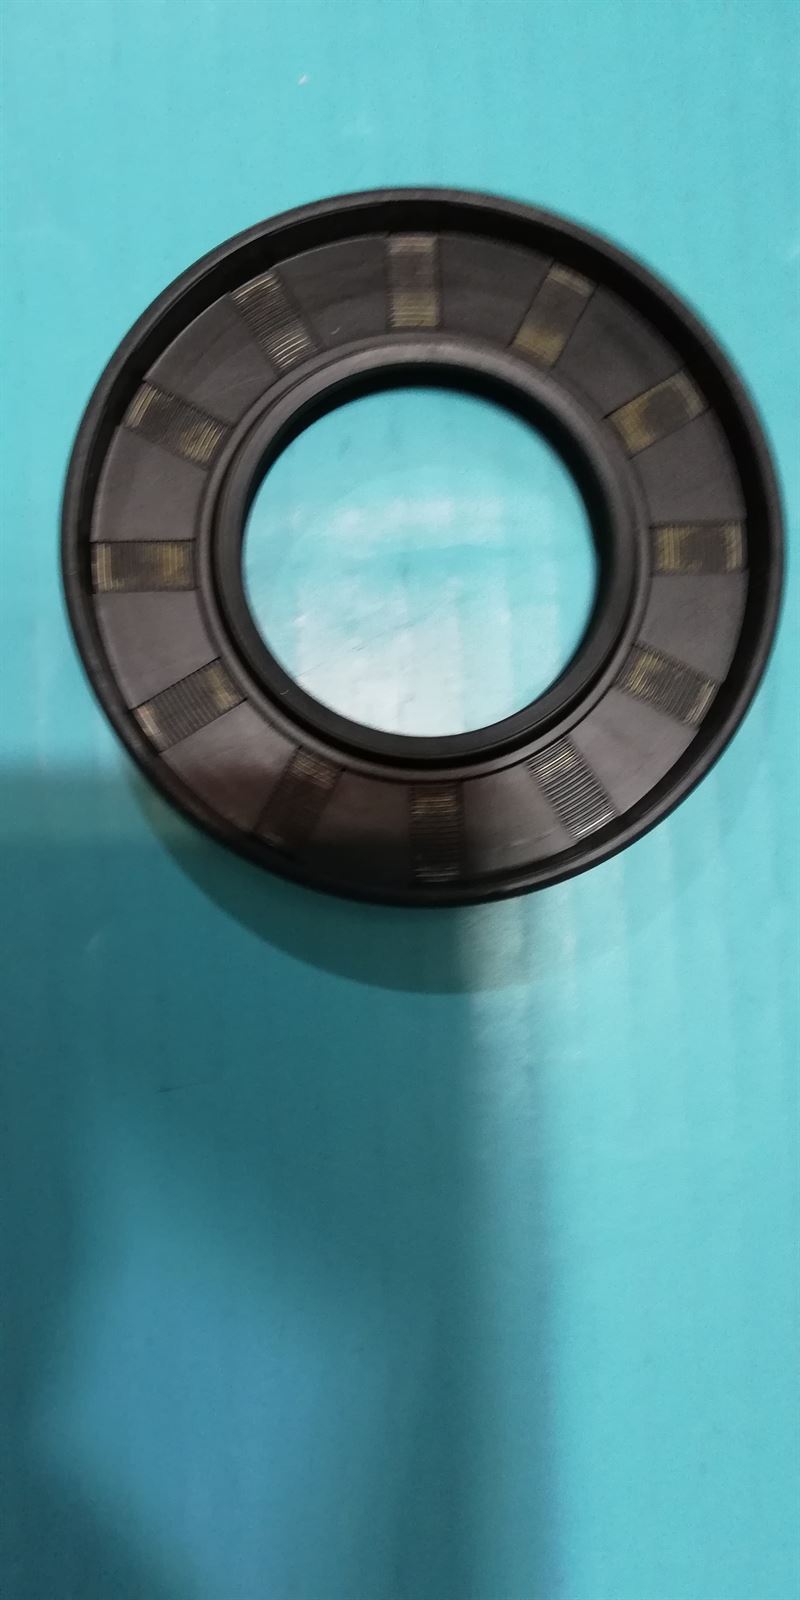 RETEN LAVADORA HAIER, RECAMBIO ORIGINAL, diámetro 85/49/10 mm, 49047436 - Imagen 2